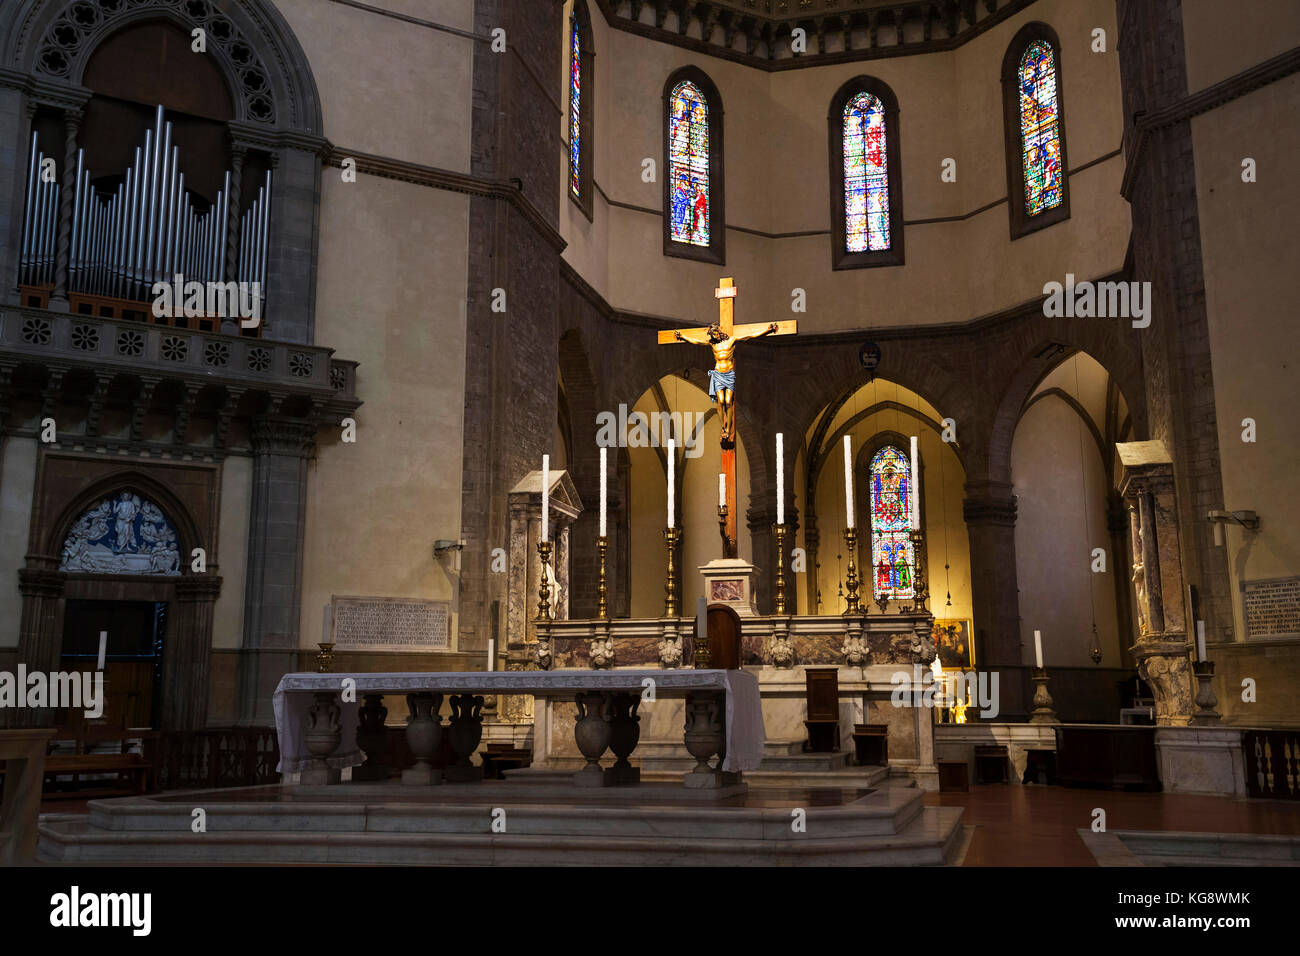 Intérieur de la cathédrale de Florence - Cattedrale di Santa Maria del Fiore montrant l'autel, crucifix et vitraux Banque D'Images